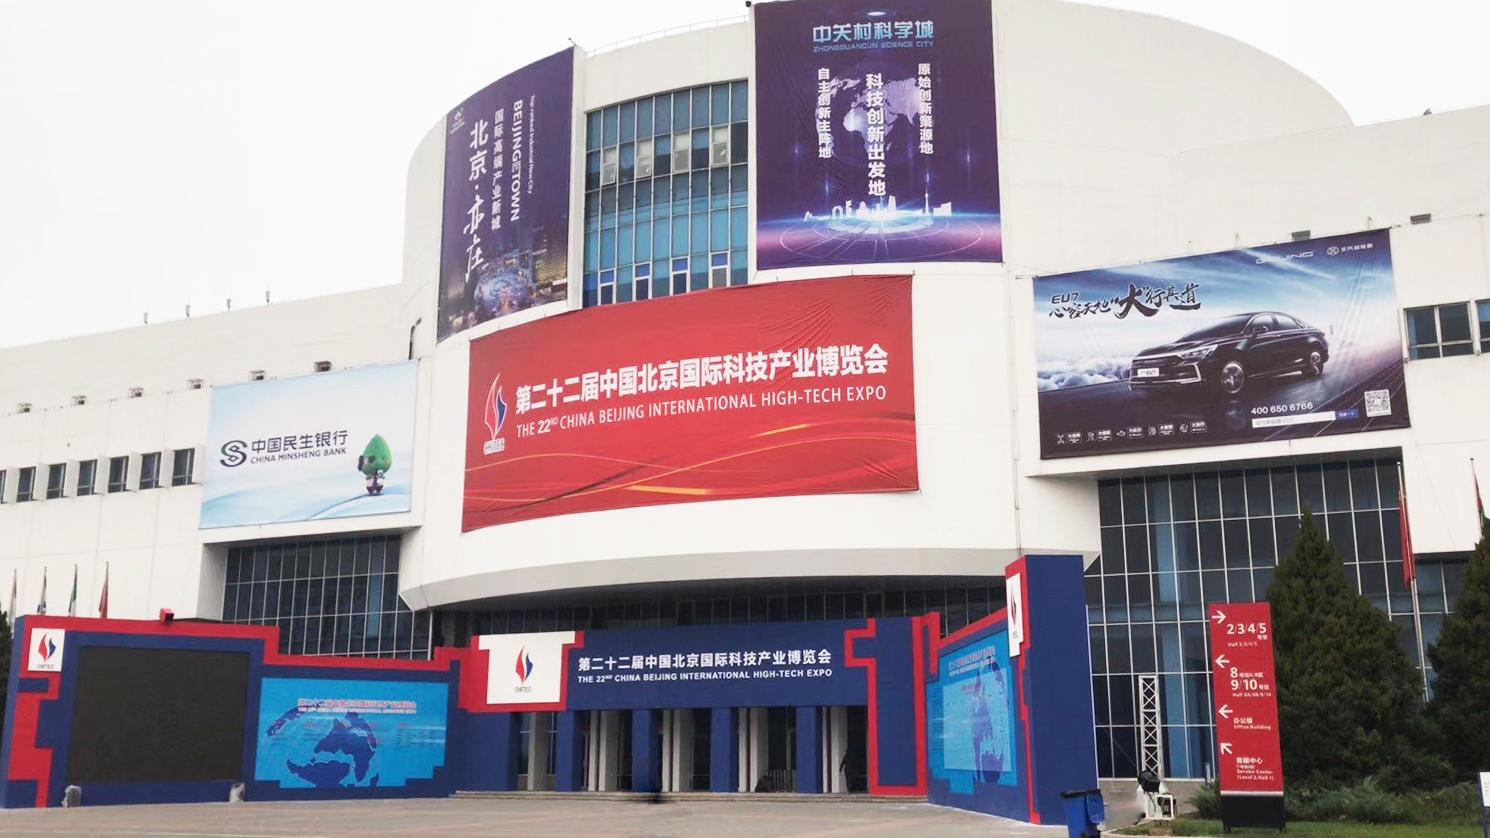 施诺精彩亮相第二十二届中国北京国际科技产业博览会